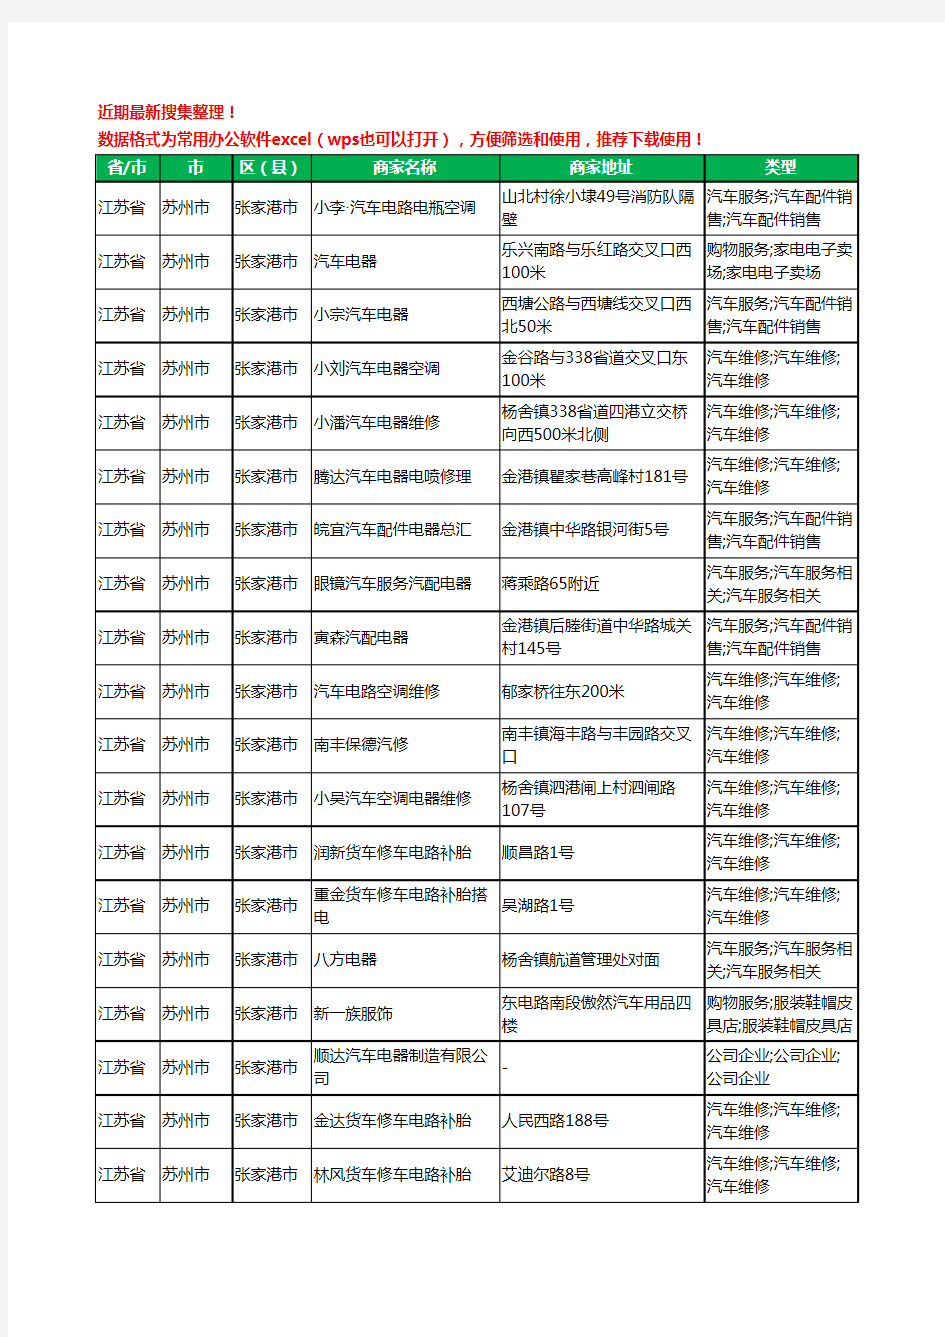 2020新版江苏省苏州市张家港市汽车电器工商企业公司商家名录名单黄页联系方式大全36家